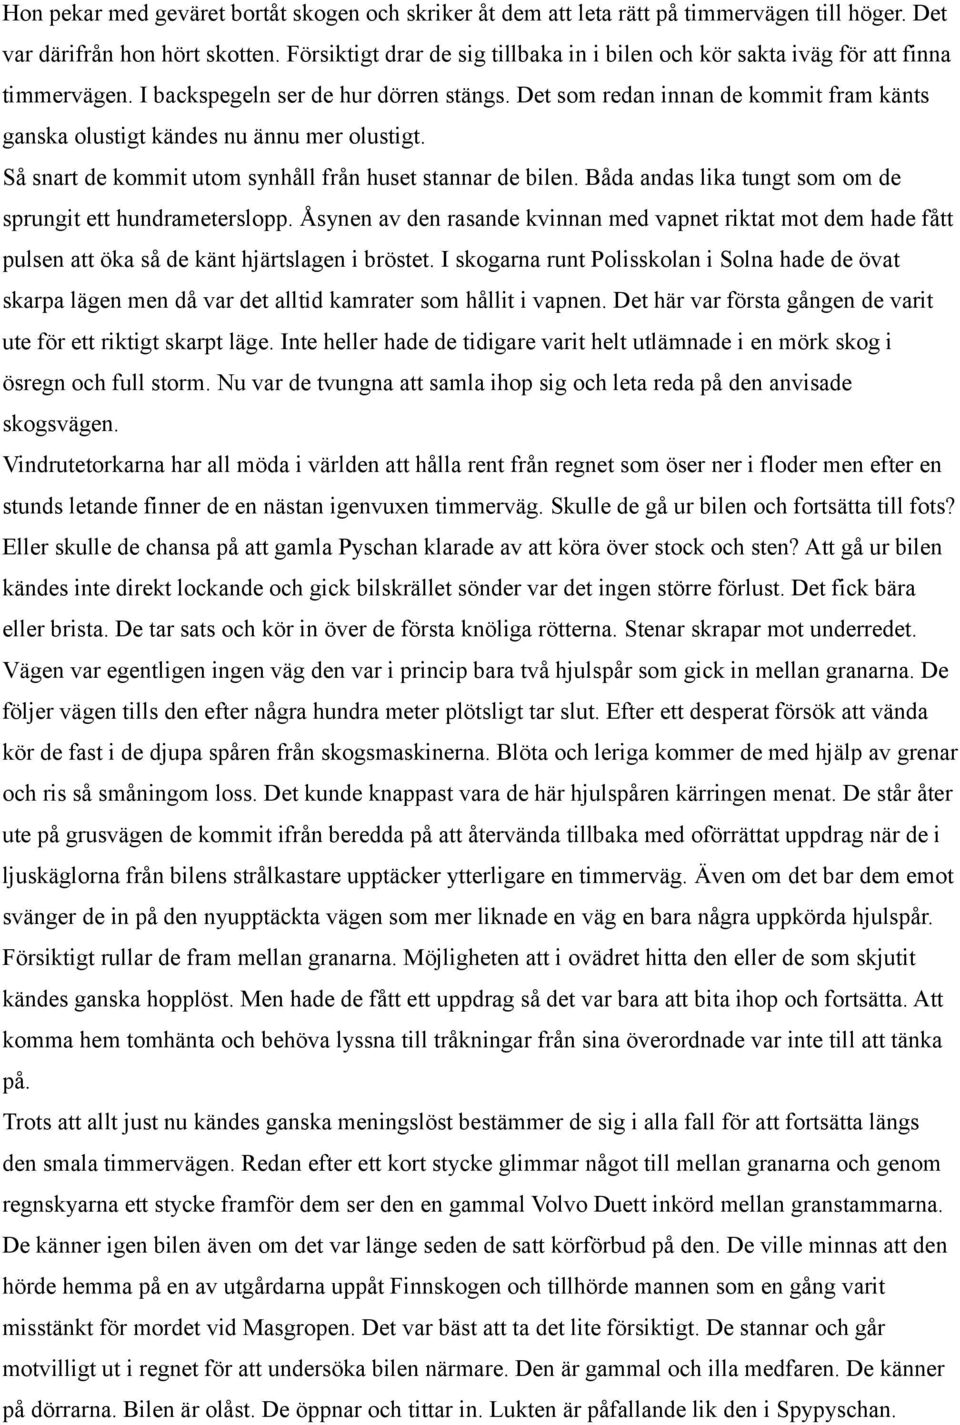 Mas-Ingvar. En nästan sann historia från storskogen. av Gunnar Ljunggren.  Copyright Gunnar Ljunggren sidor - PDF Gratis nedladdning